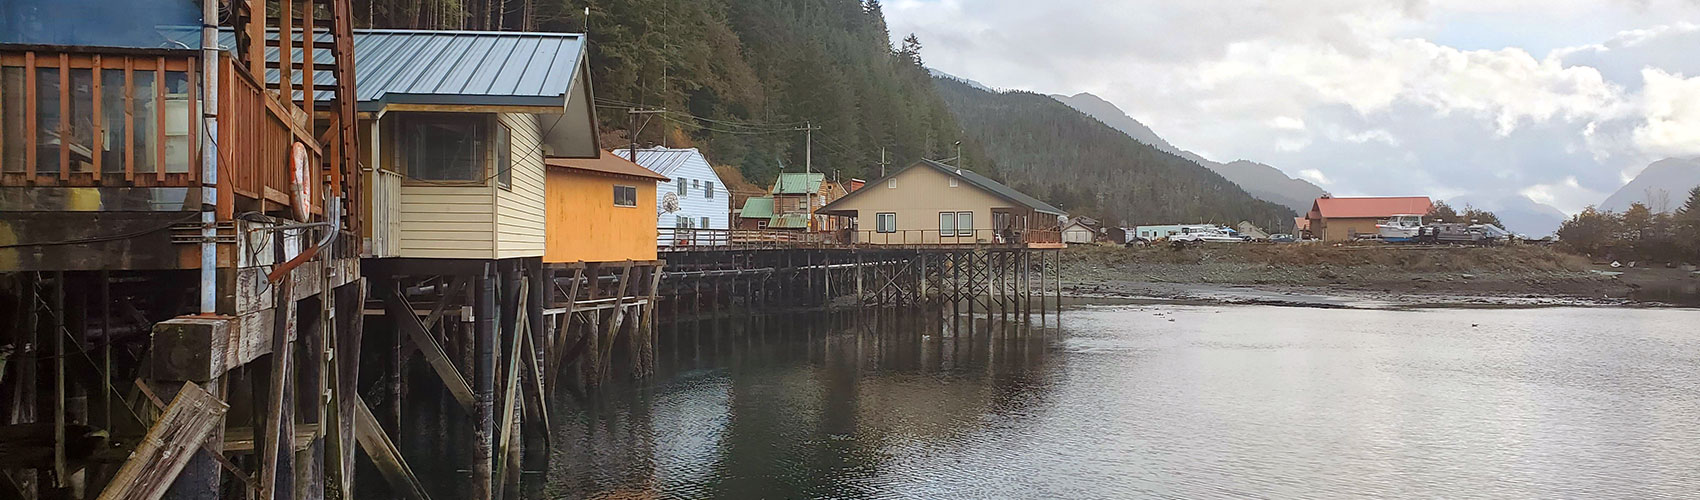 Coastal Alaskan community.